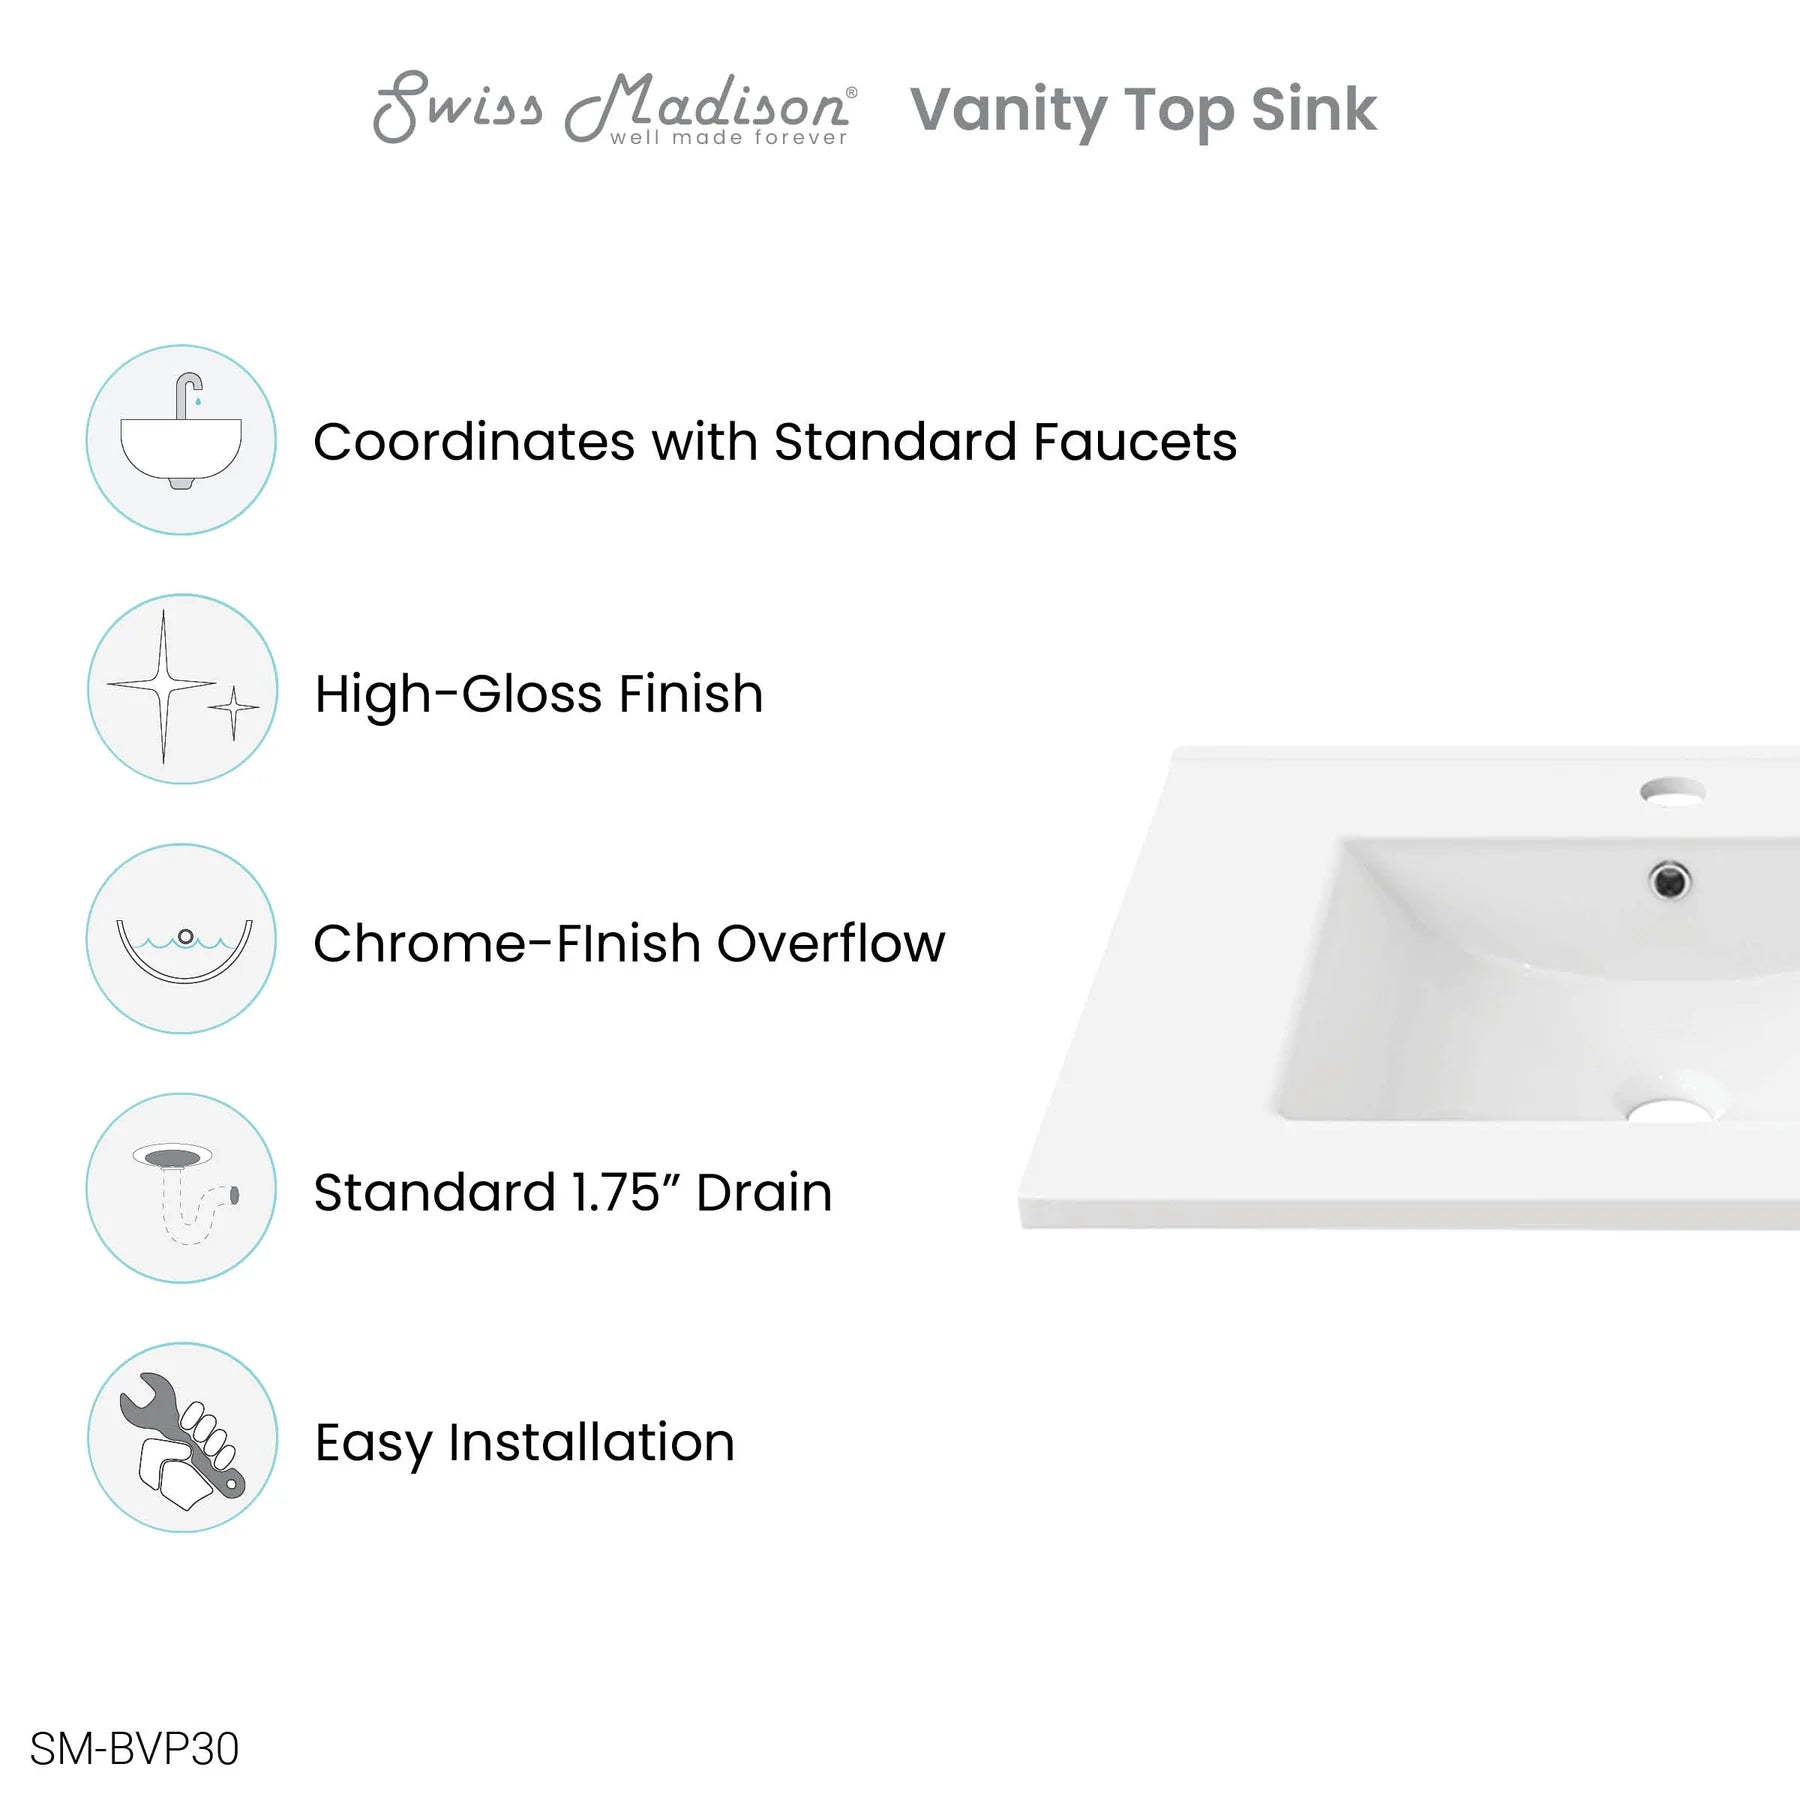 Swiss Madison 30" Vanity Top Bathroom Sink - SM-BVP30